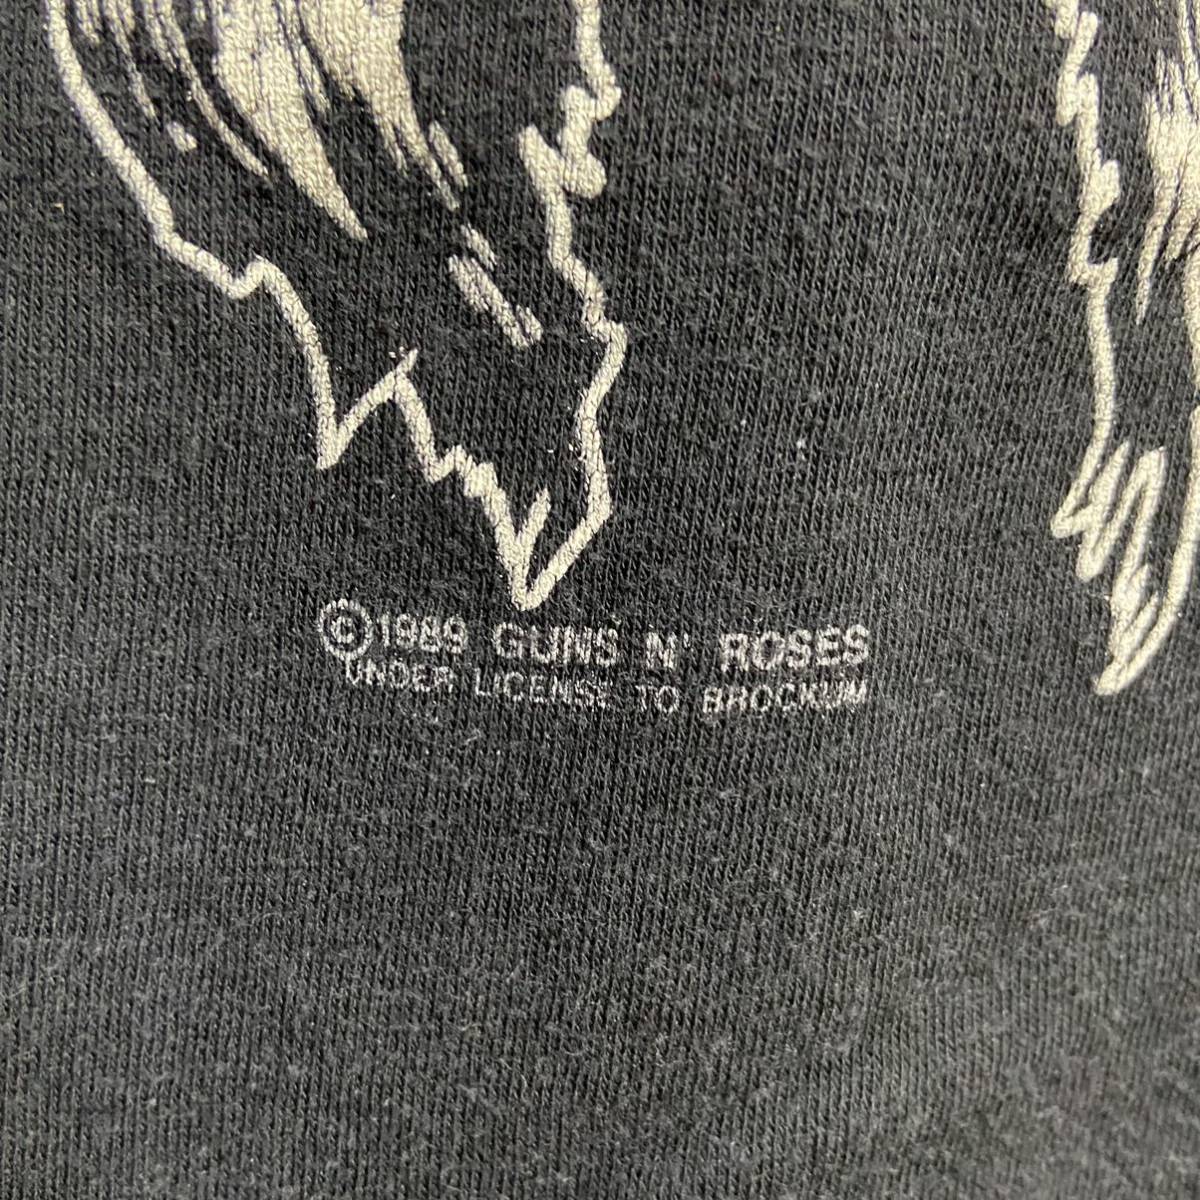 ガンズアンドローゼズ GNR GUNS N' ROSES 1989 LA Tシャツ ローリングストーンズ